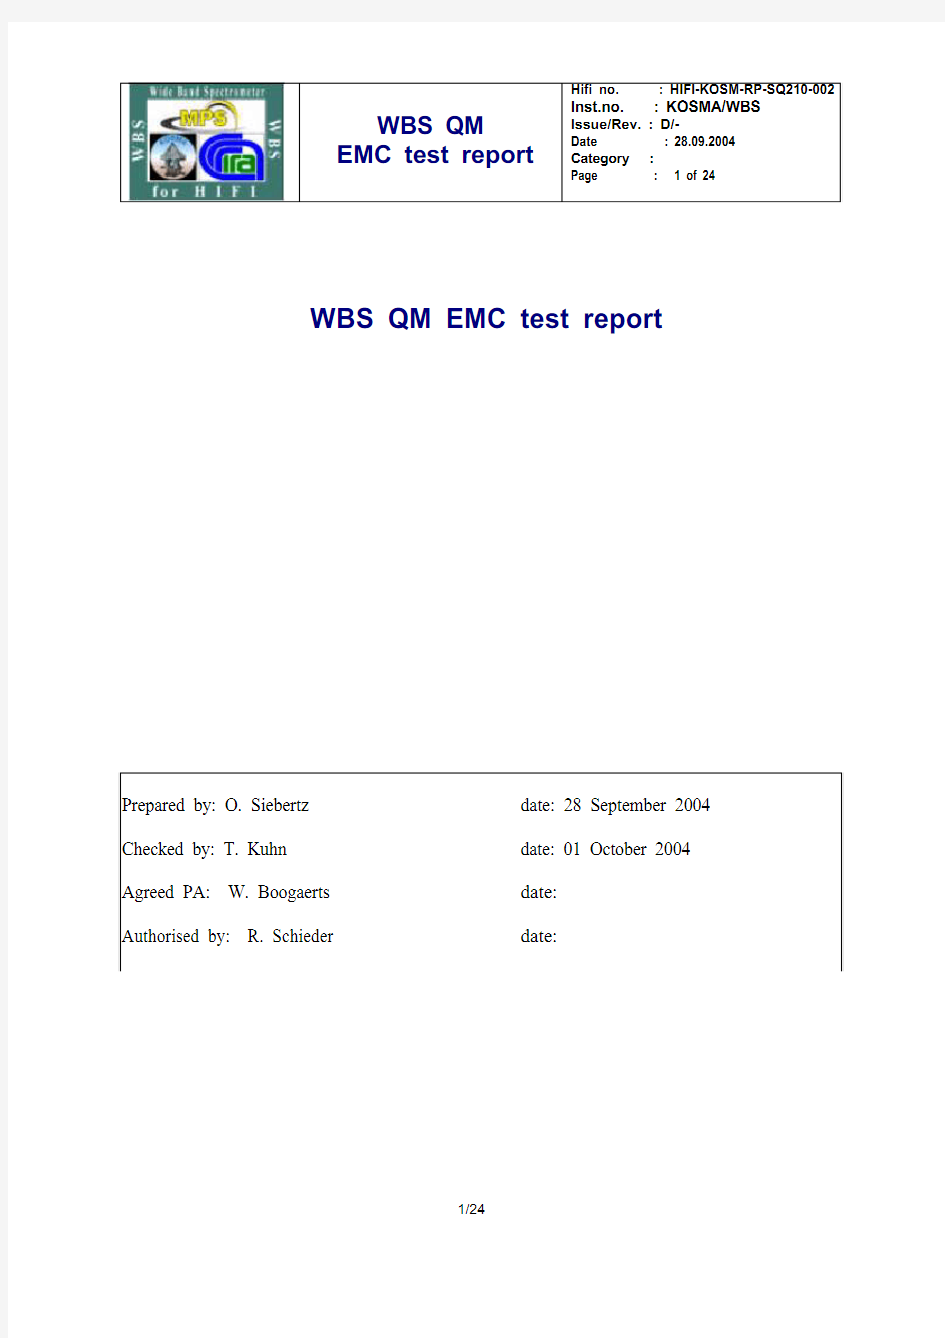 EMC test report